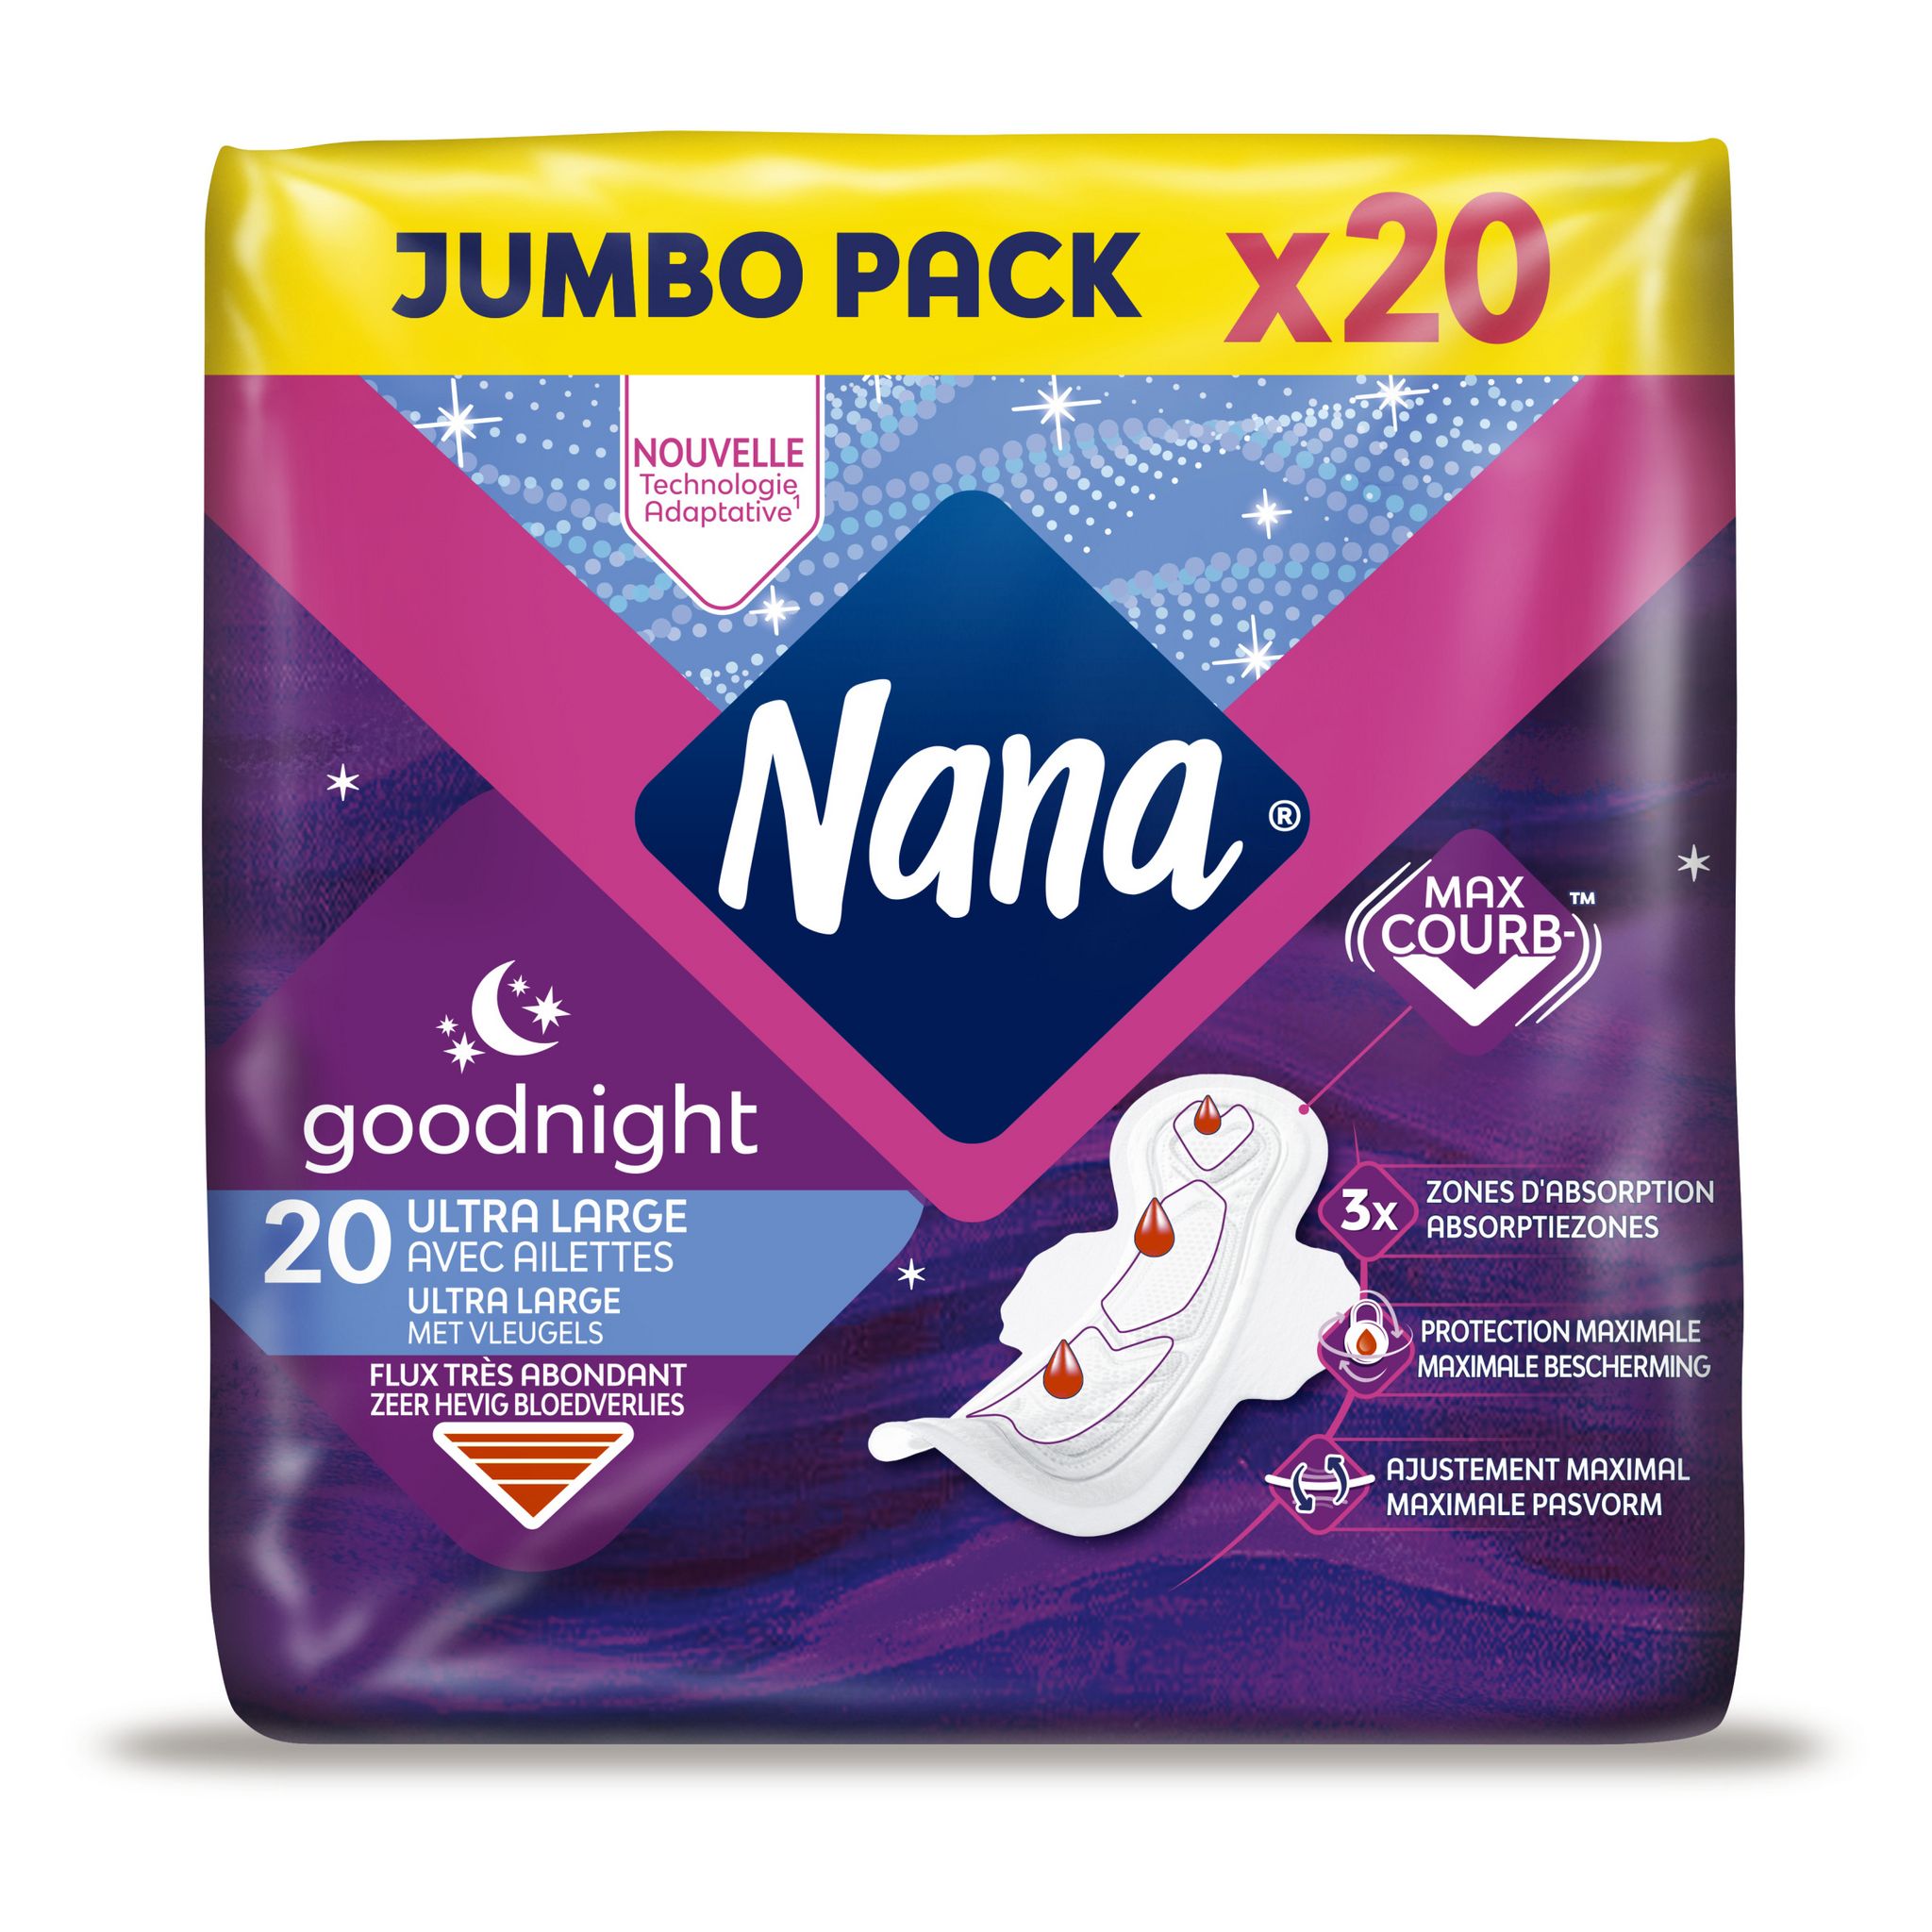 NANA Goodnight serviettes hygiéniques nuit avec ailettes 20 serviettes pas  cher 